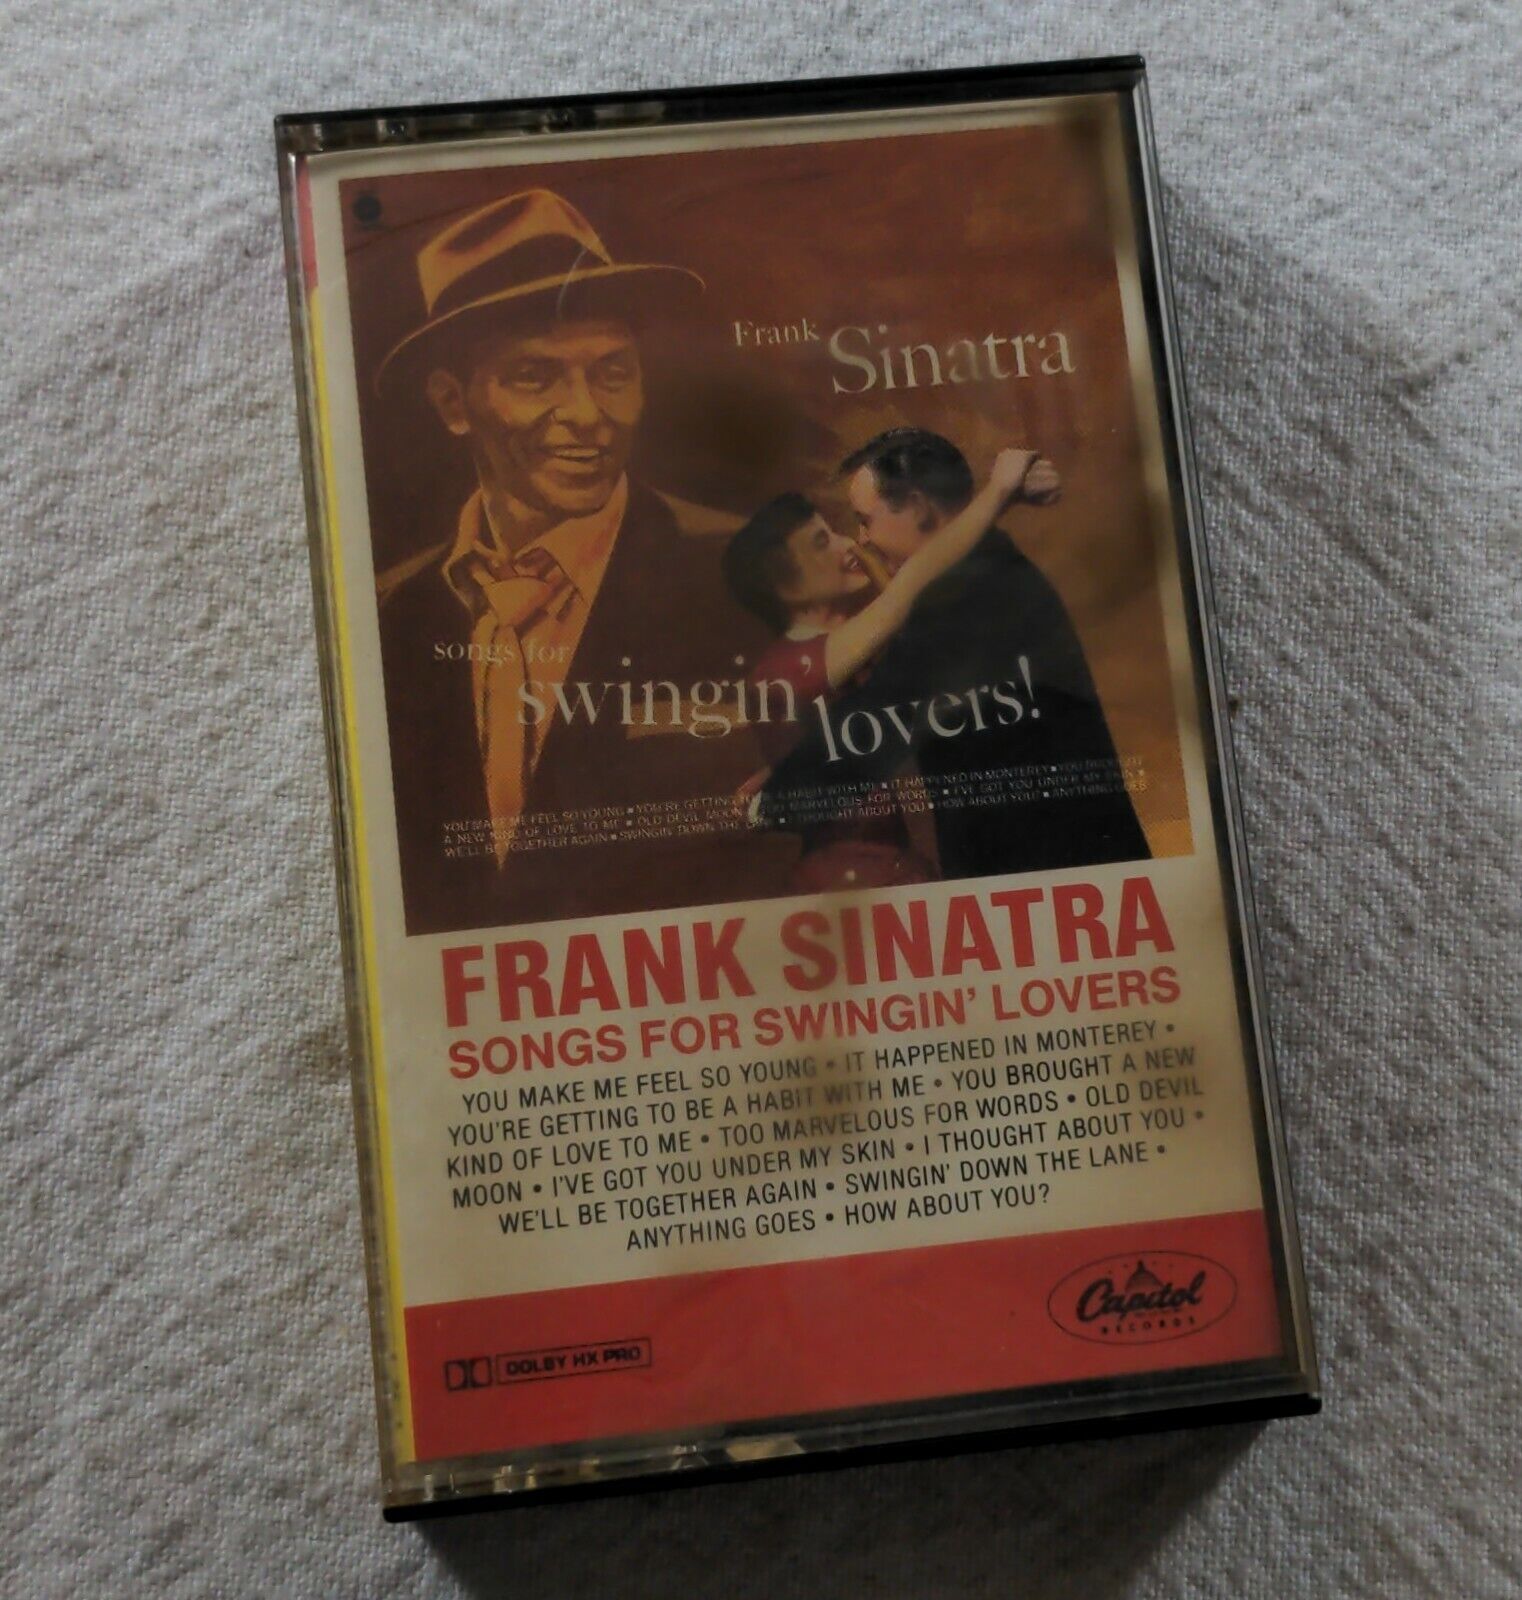 Frank Sinatra Songs for Swinging Lovers Cassette